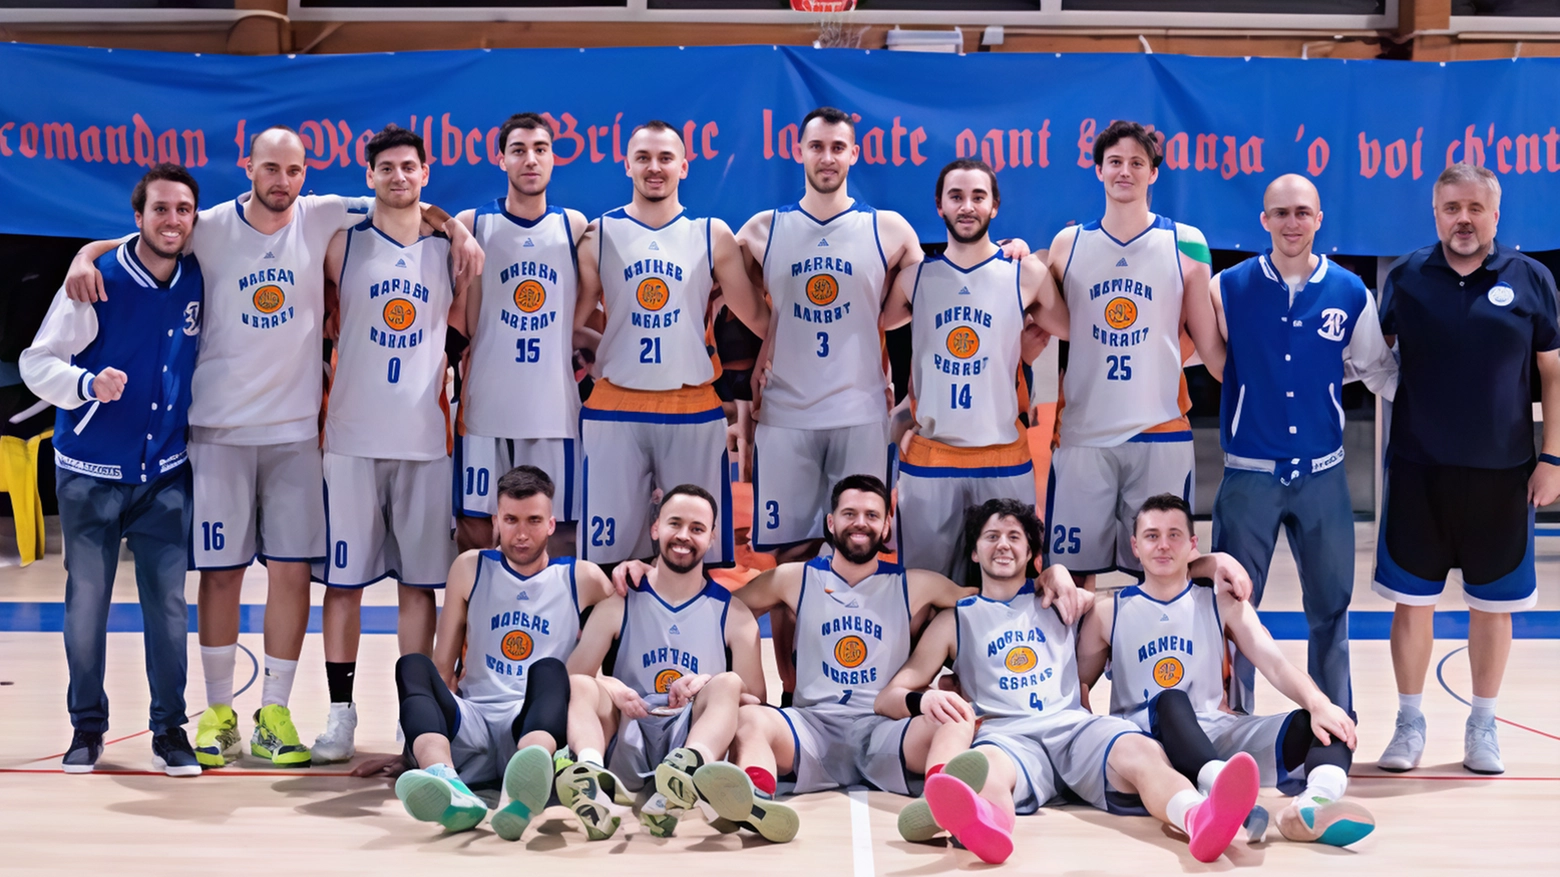 La Matilde Basket Bondeno vince con autorità contro Basket Estense per 61-40 al PalaBonini, grazie a un allungo decisivo nei quarti centrali. La squadra si prepara ora per la trasferta contro la Pallacanestro Budrio.